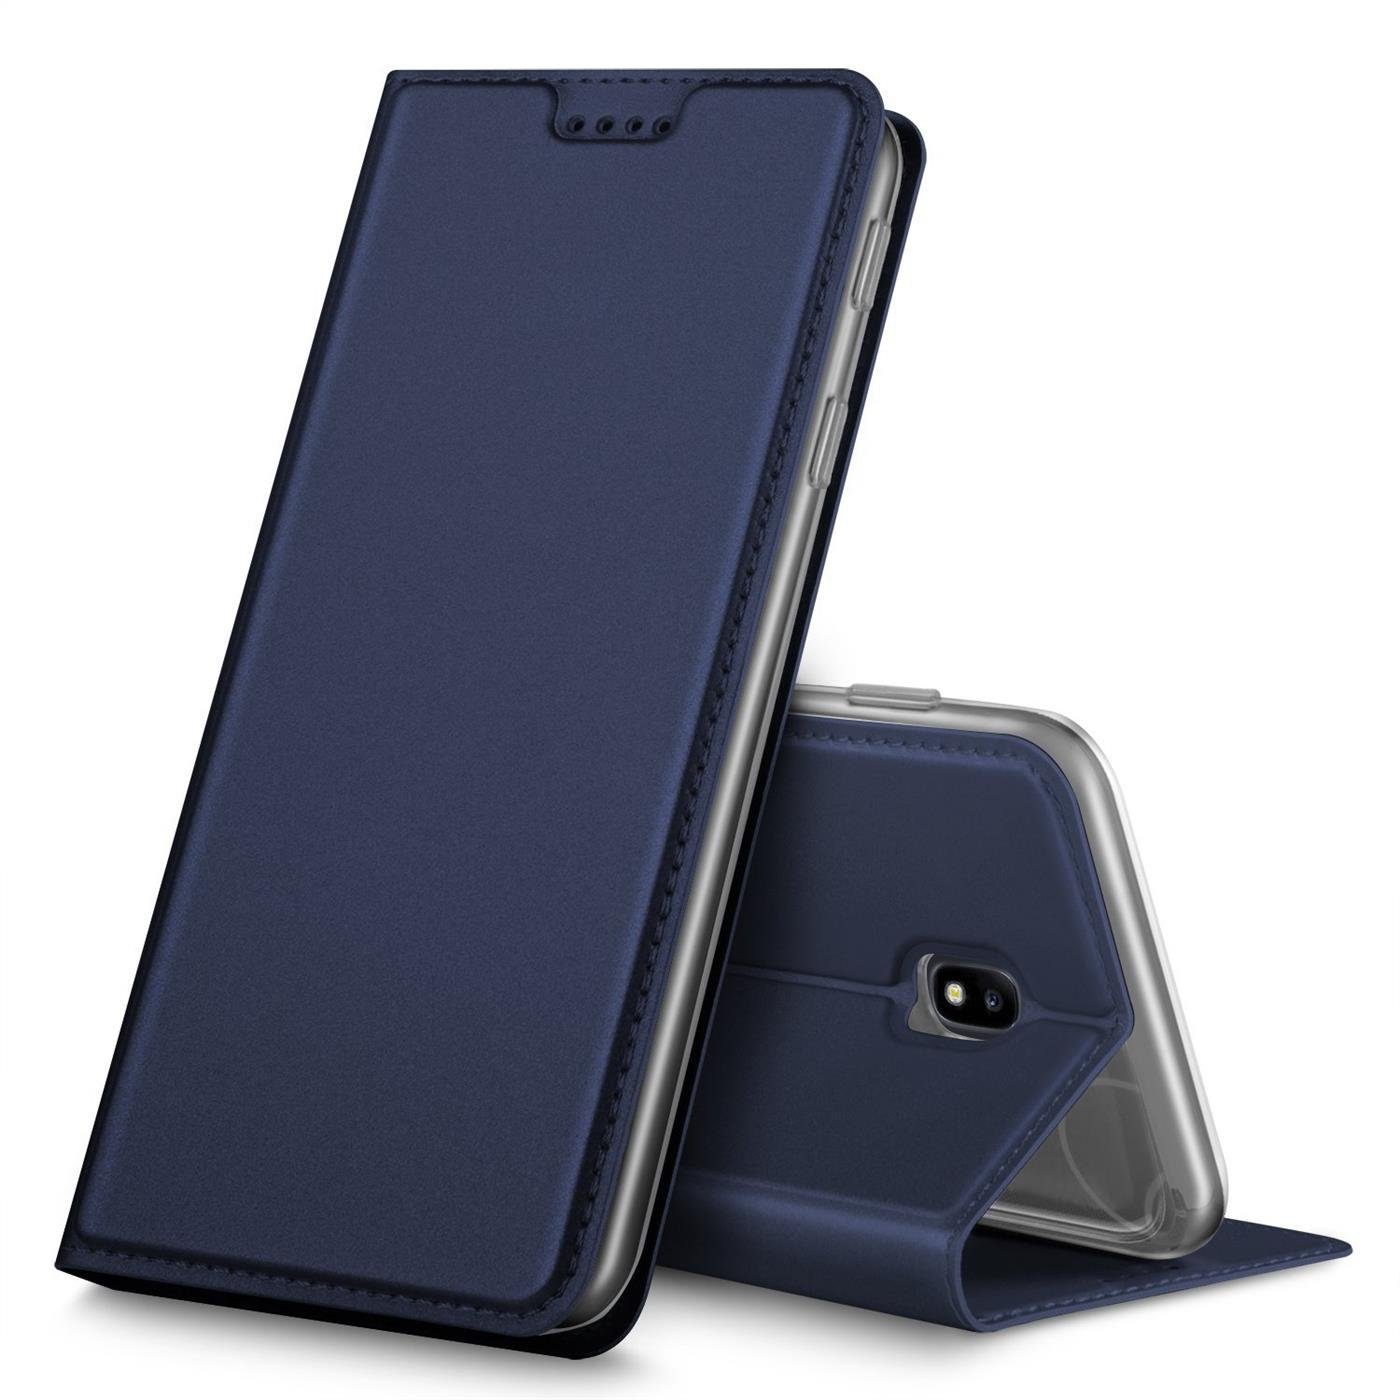 CoolGadget Handyhülle Magnet Case Handy Tasche für Samsung Galaxy J3 2017 5  Zoll, Hülle Klapphülle Ultra Slim Flip Cover für Samsung J3 2017 Schutzhülle